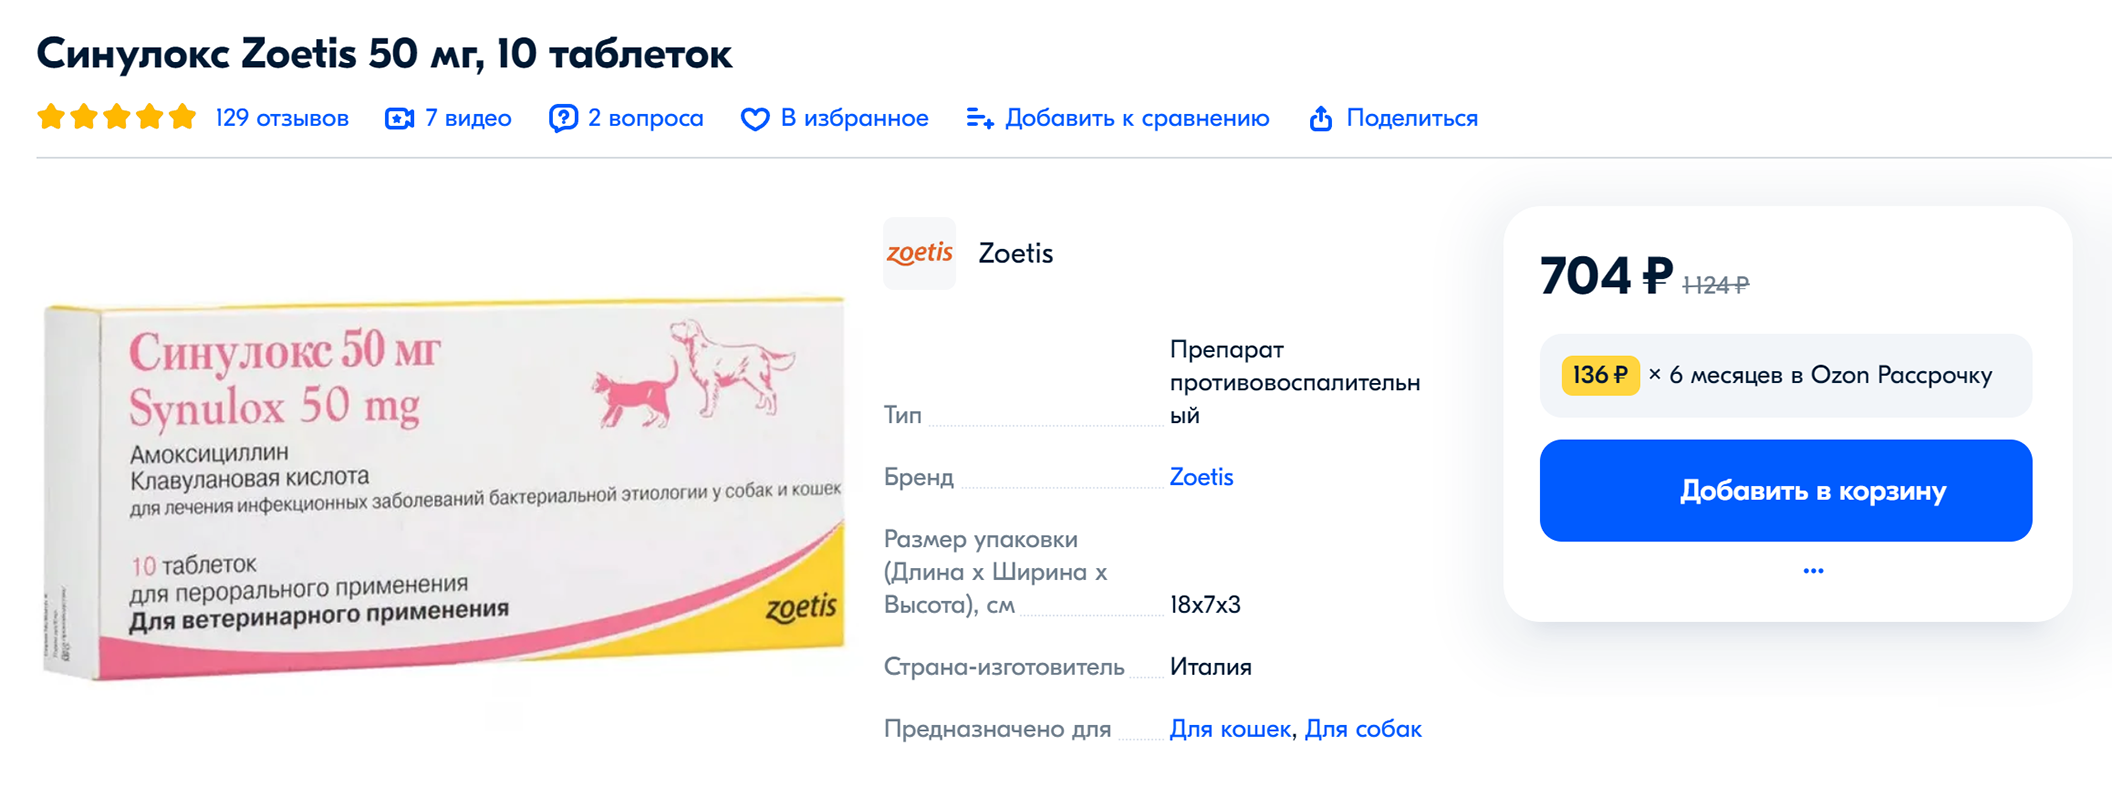 Препараты, которые прописали Хрюше после операции. Источник: ozon.ru